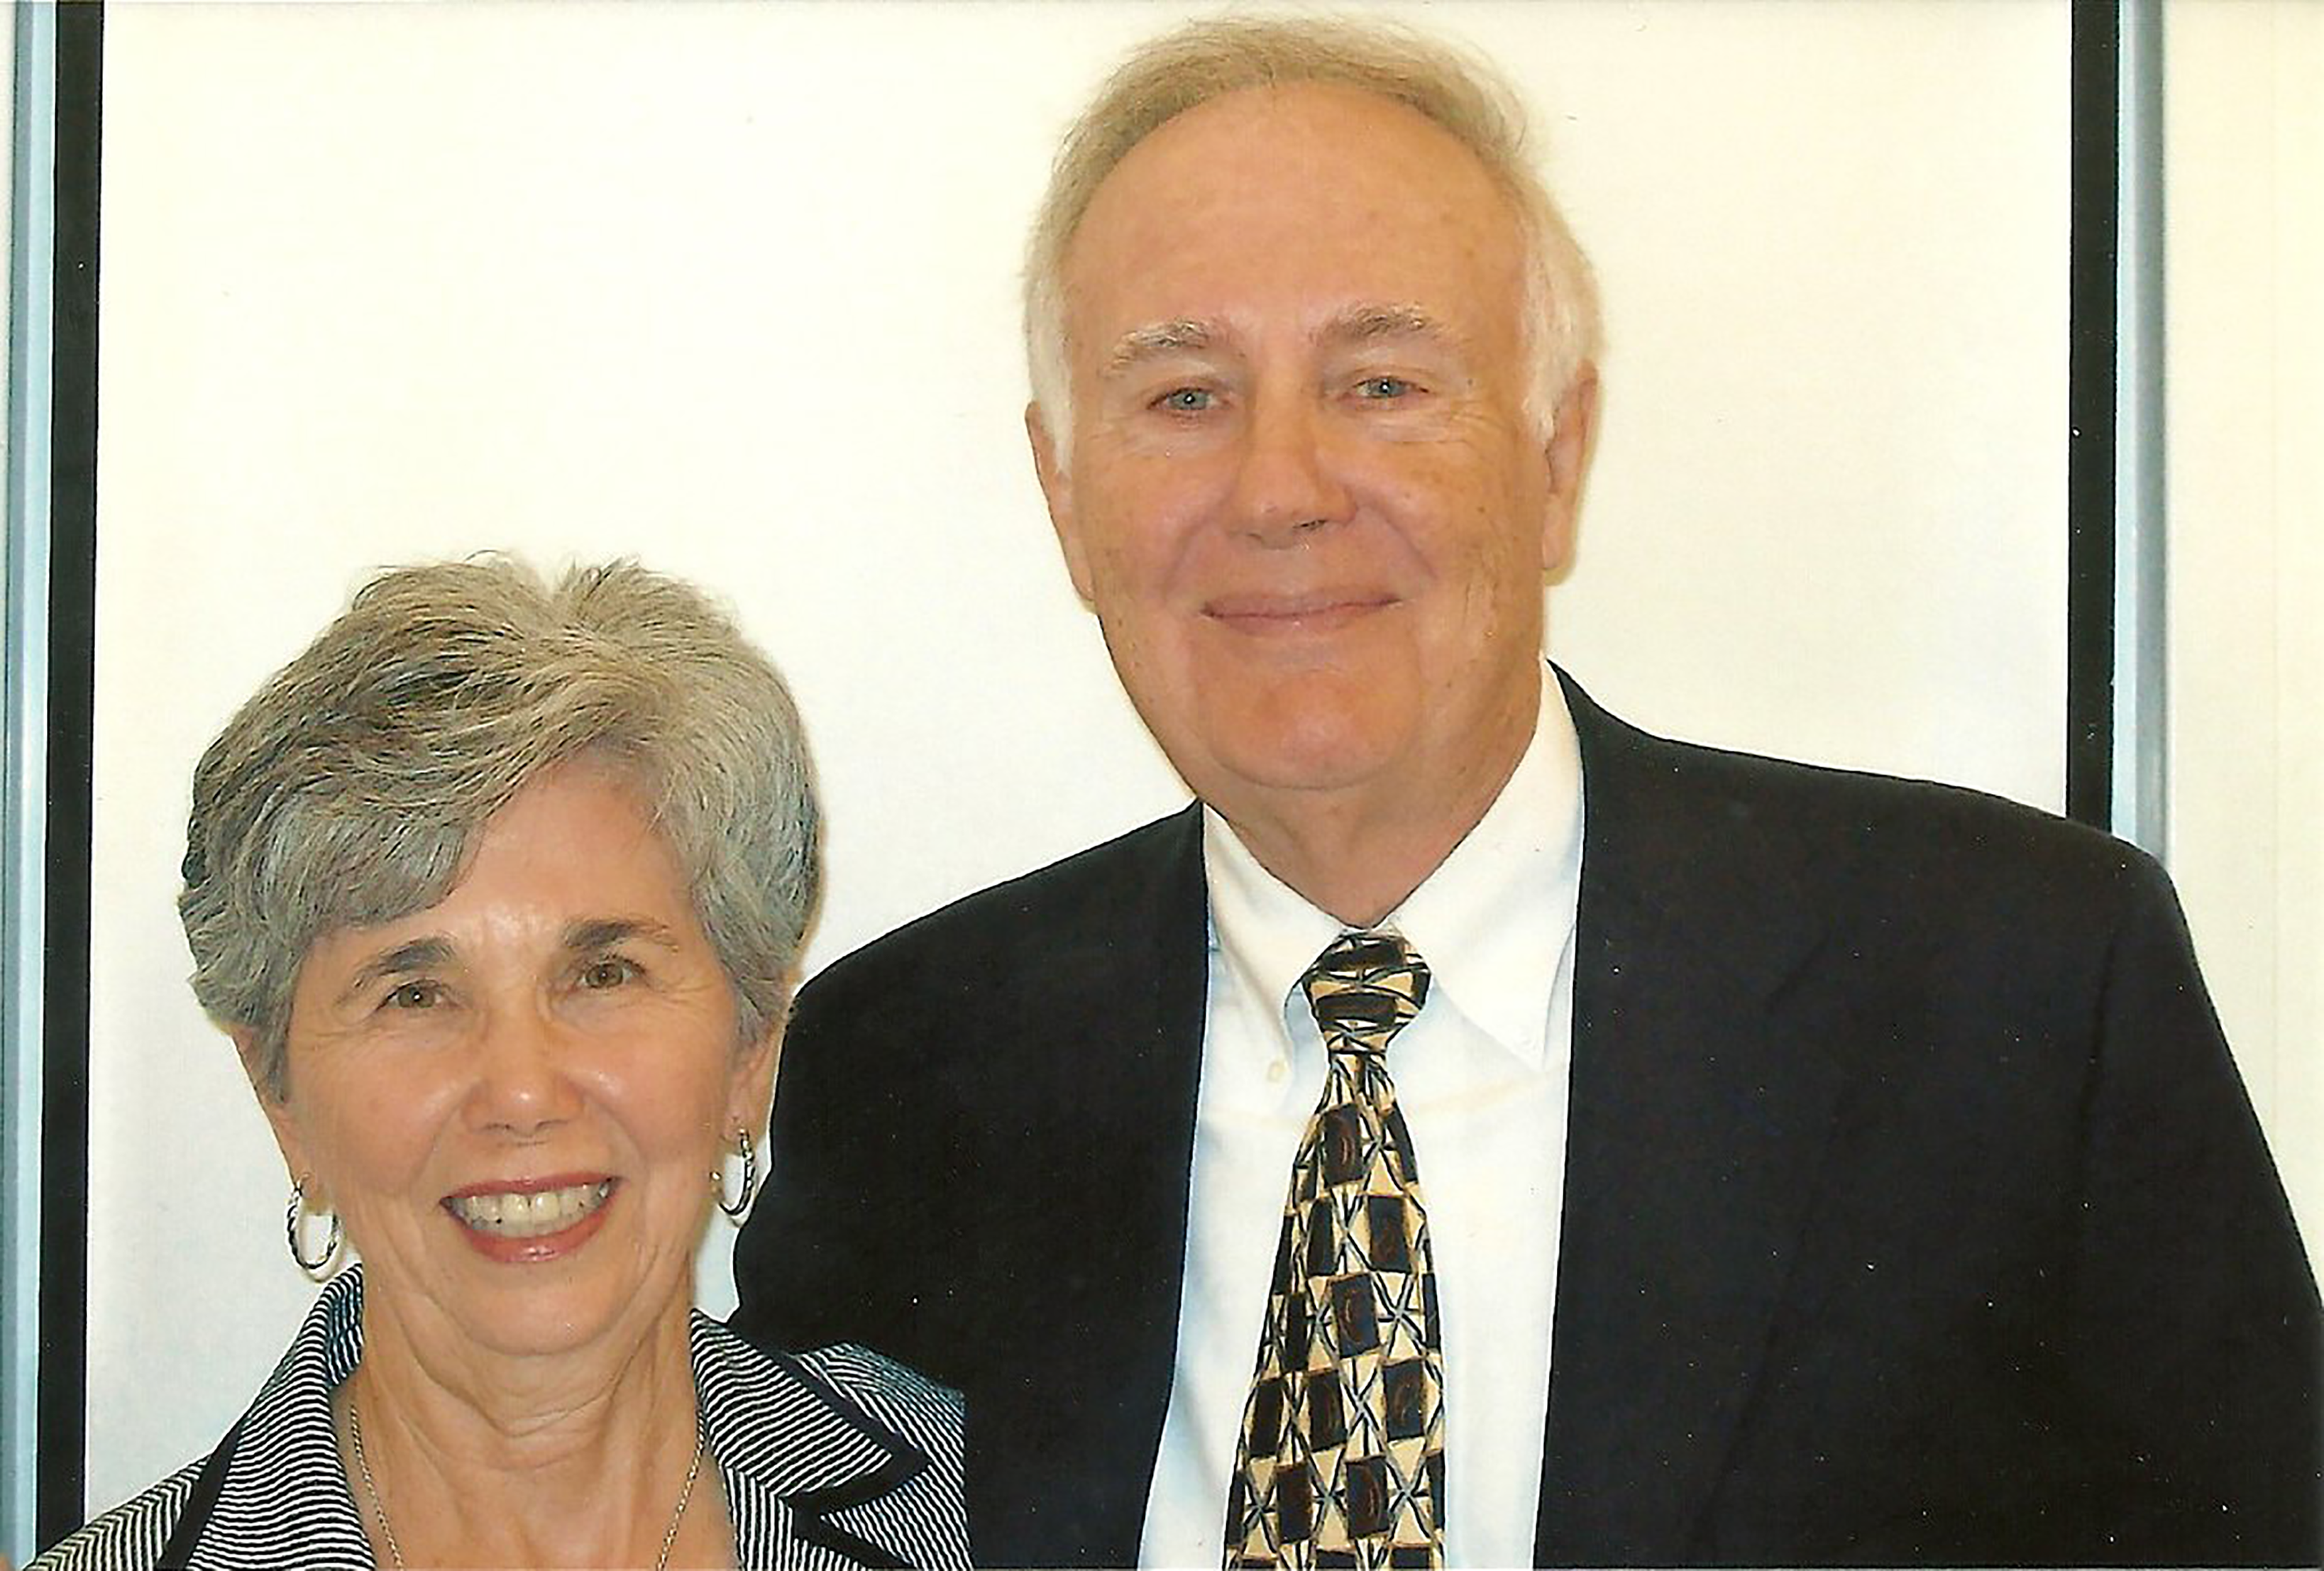 Dr. Bill Kiker with wife Jane Kiker